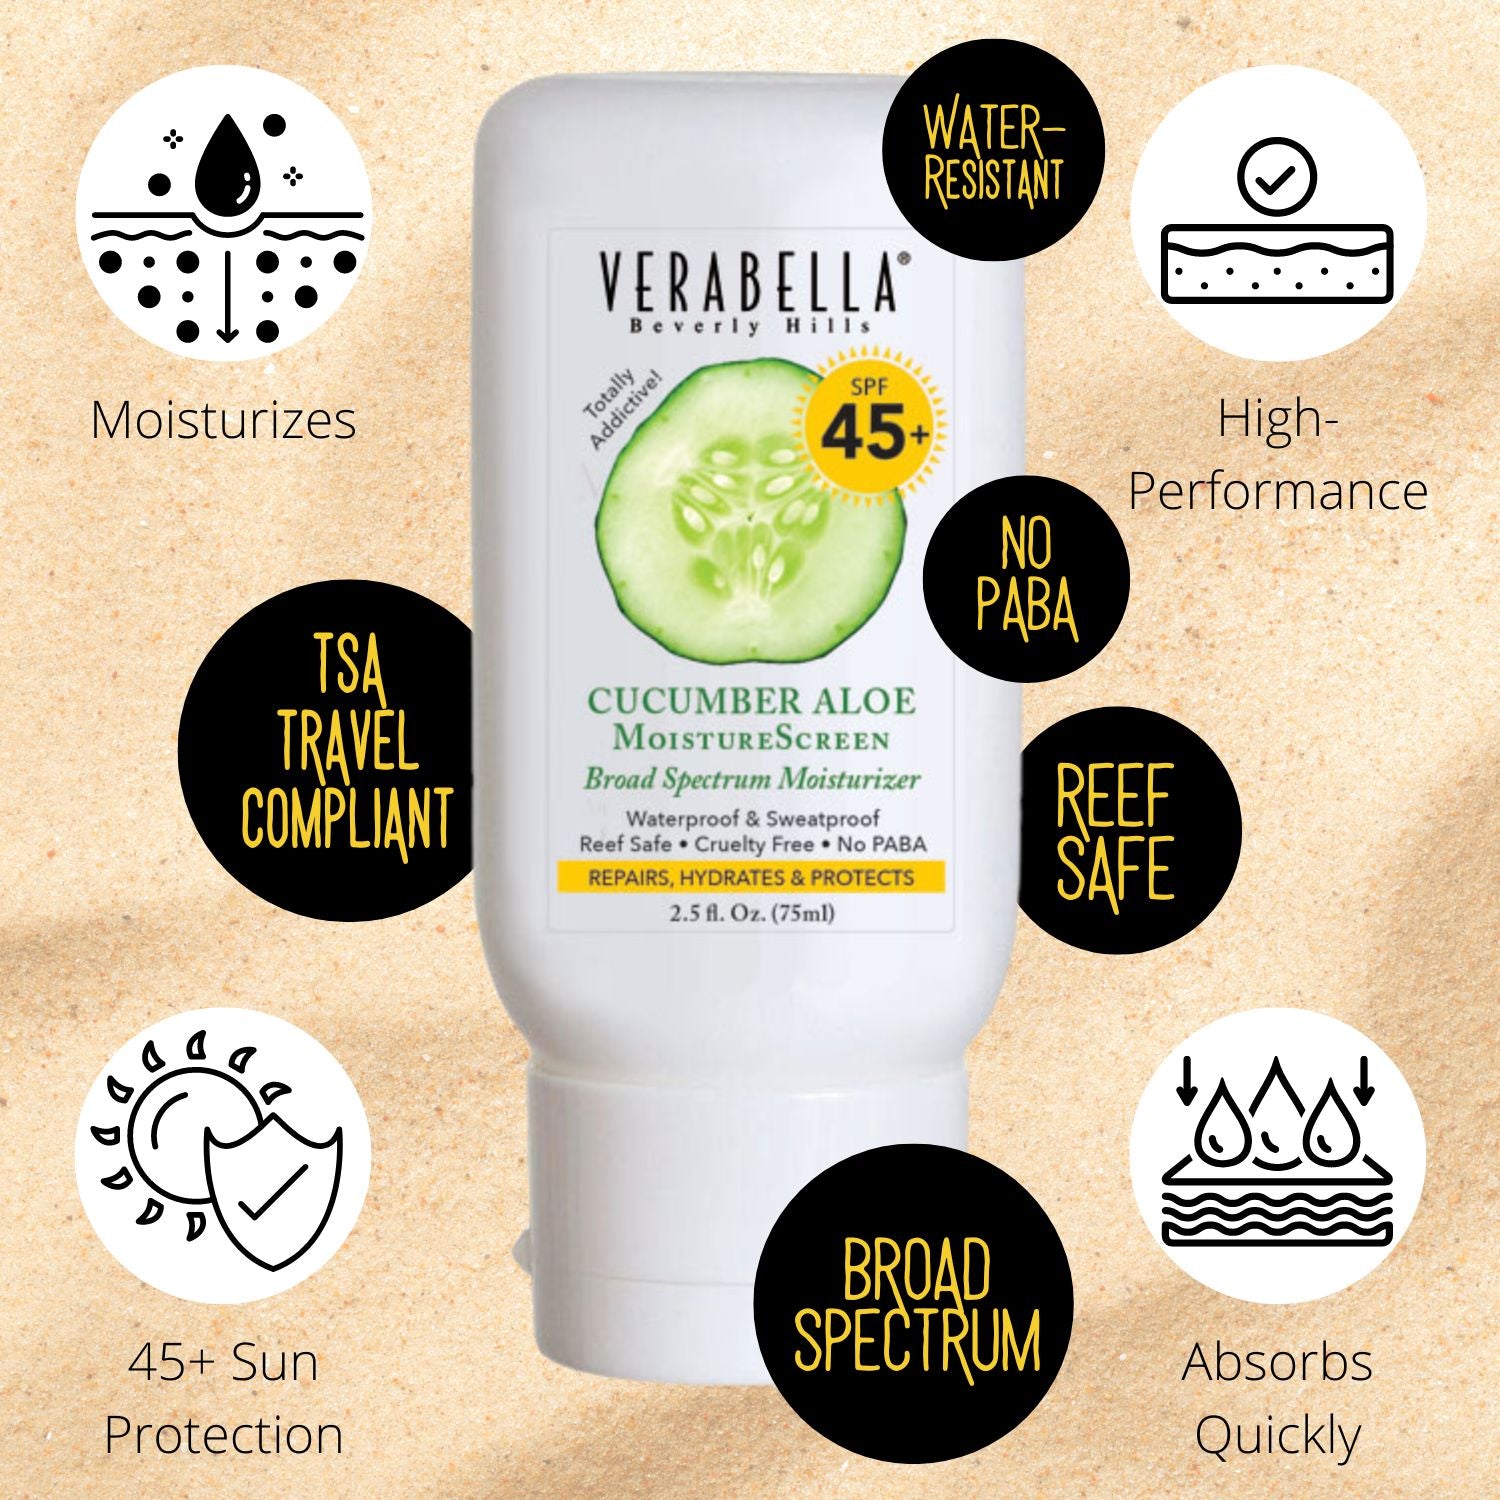 Benefits - Verabella Cucumber Aloe MoistureScreen SPF 45